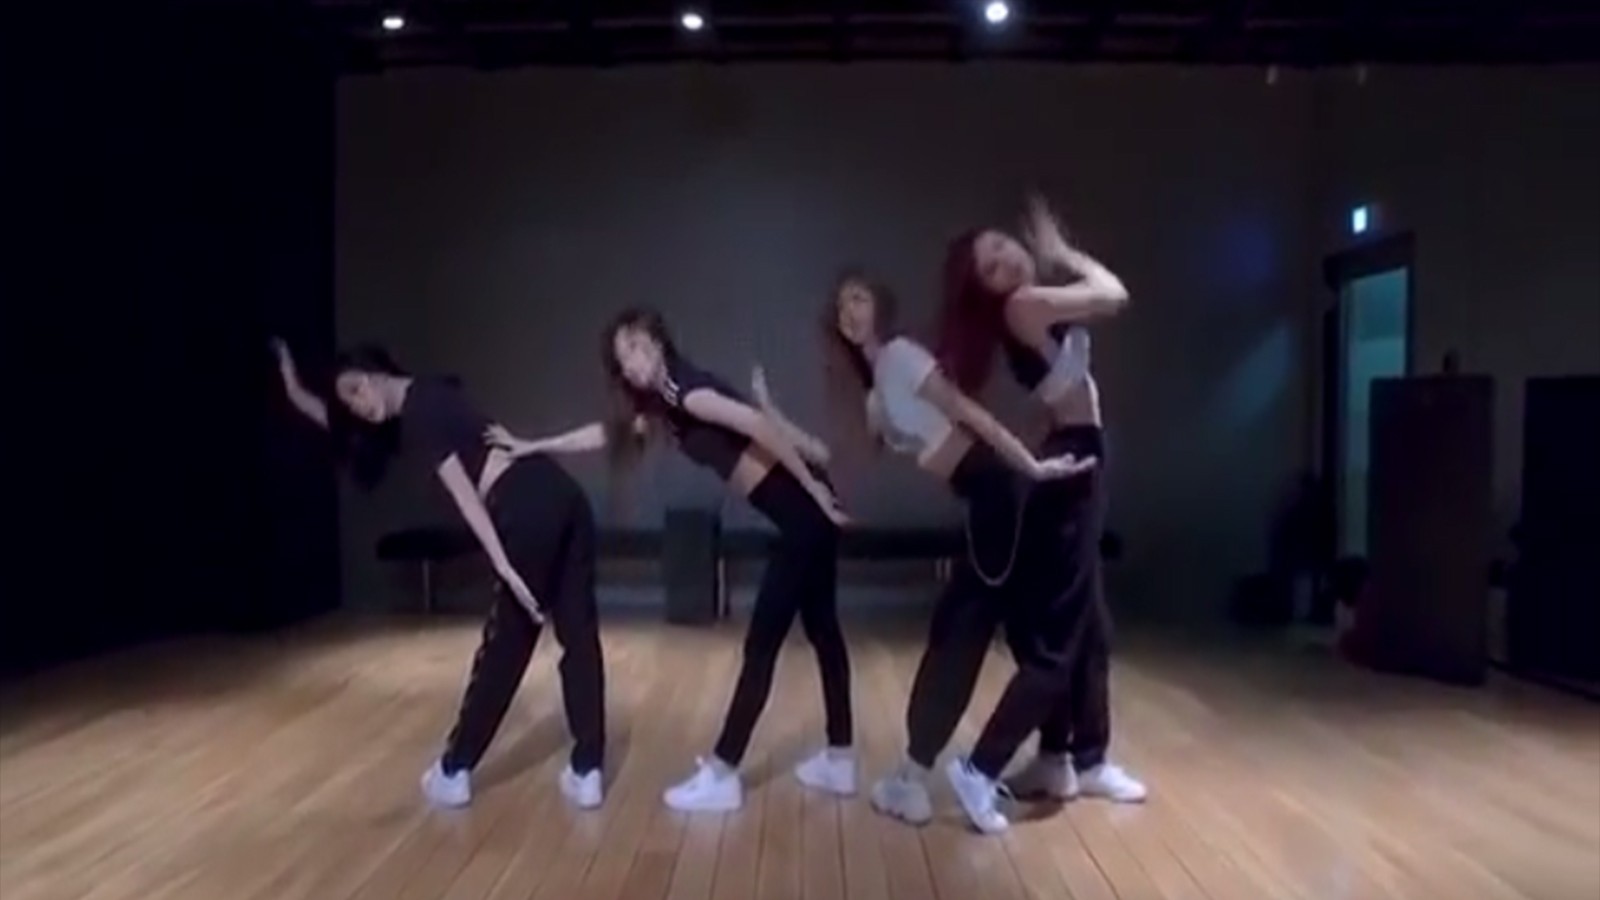 BLACKPINK (ddu-du-ddu-du) Dance Practice Video